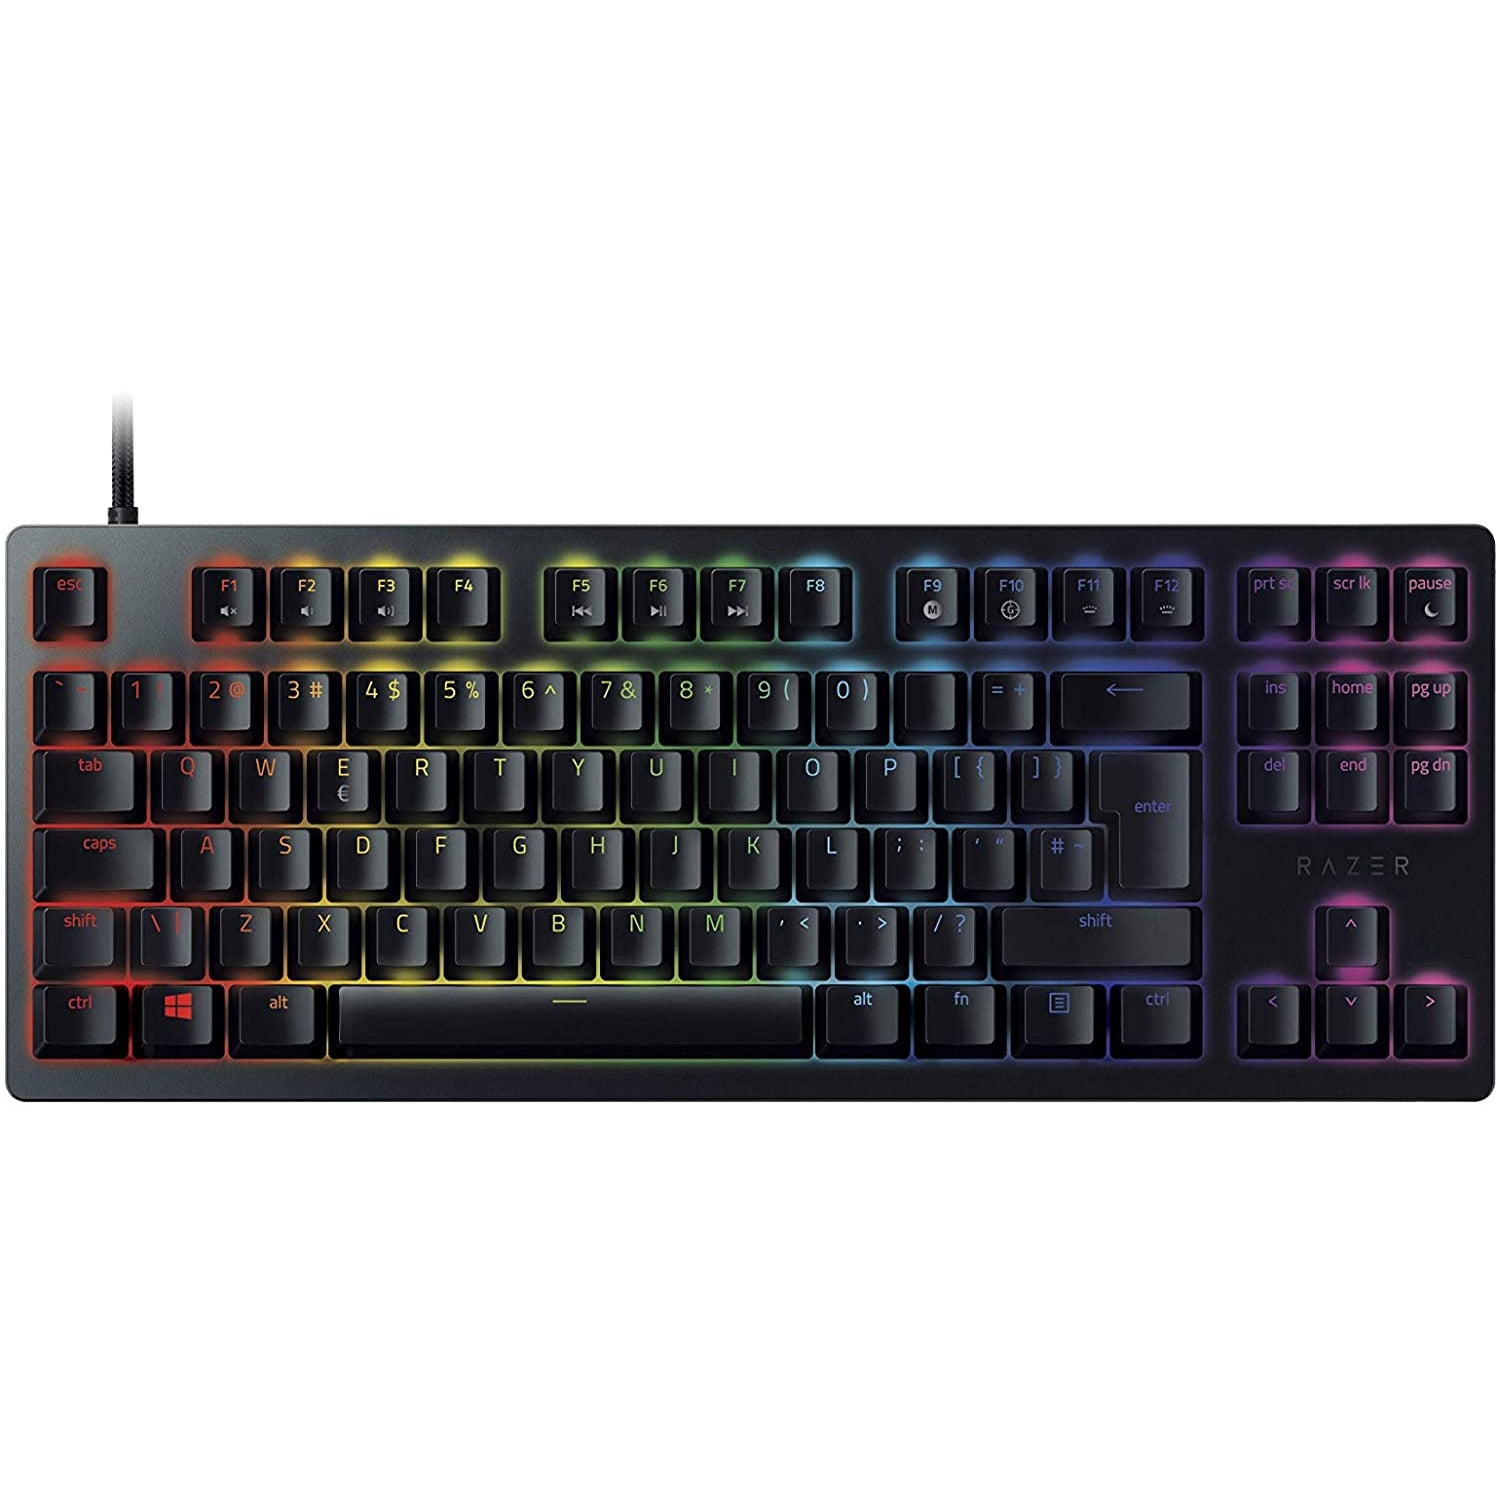 Razer Huntsman Tournament Edition Keyboard - Excellent